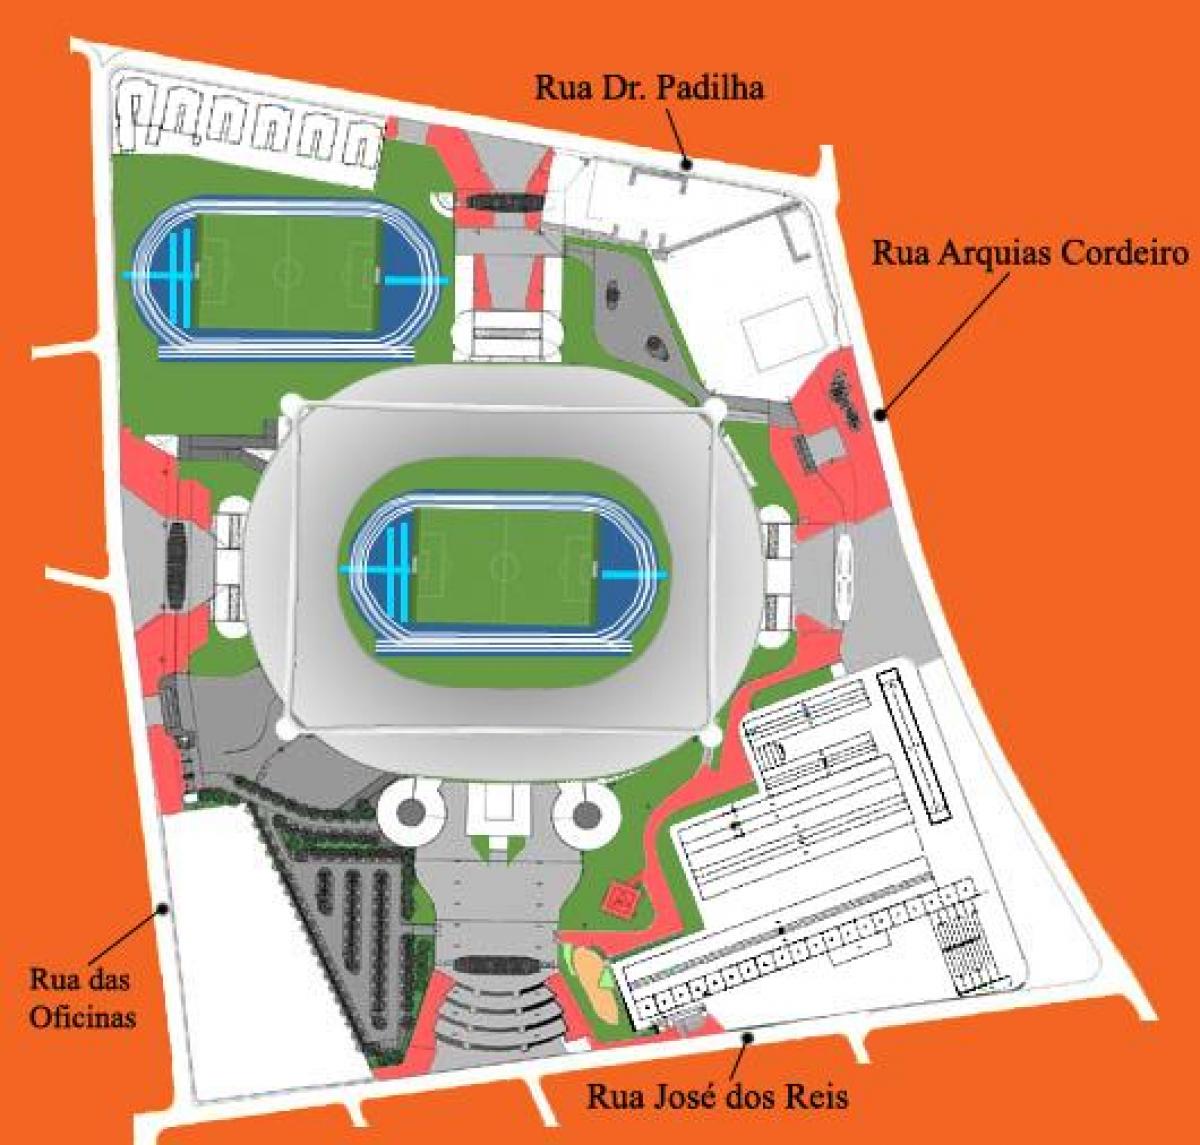 Kart over stadion Engenhão